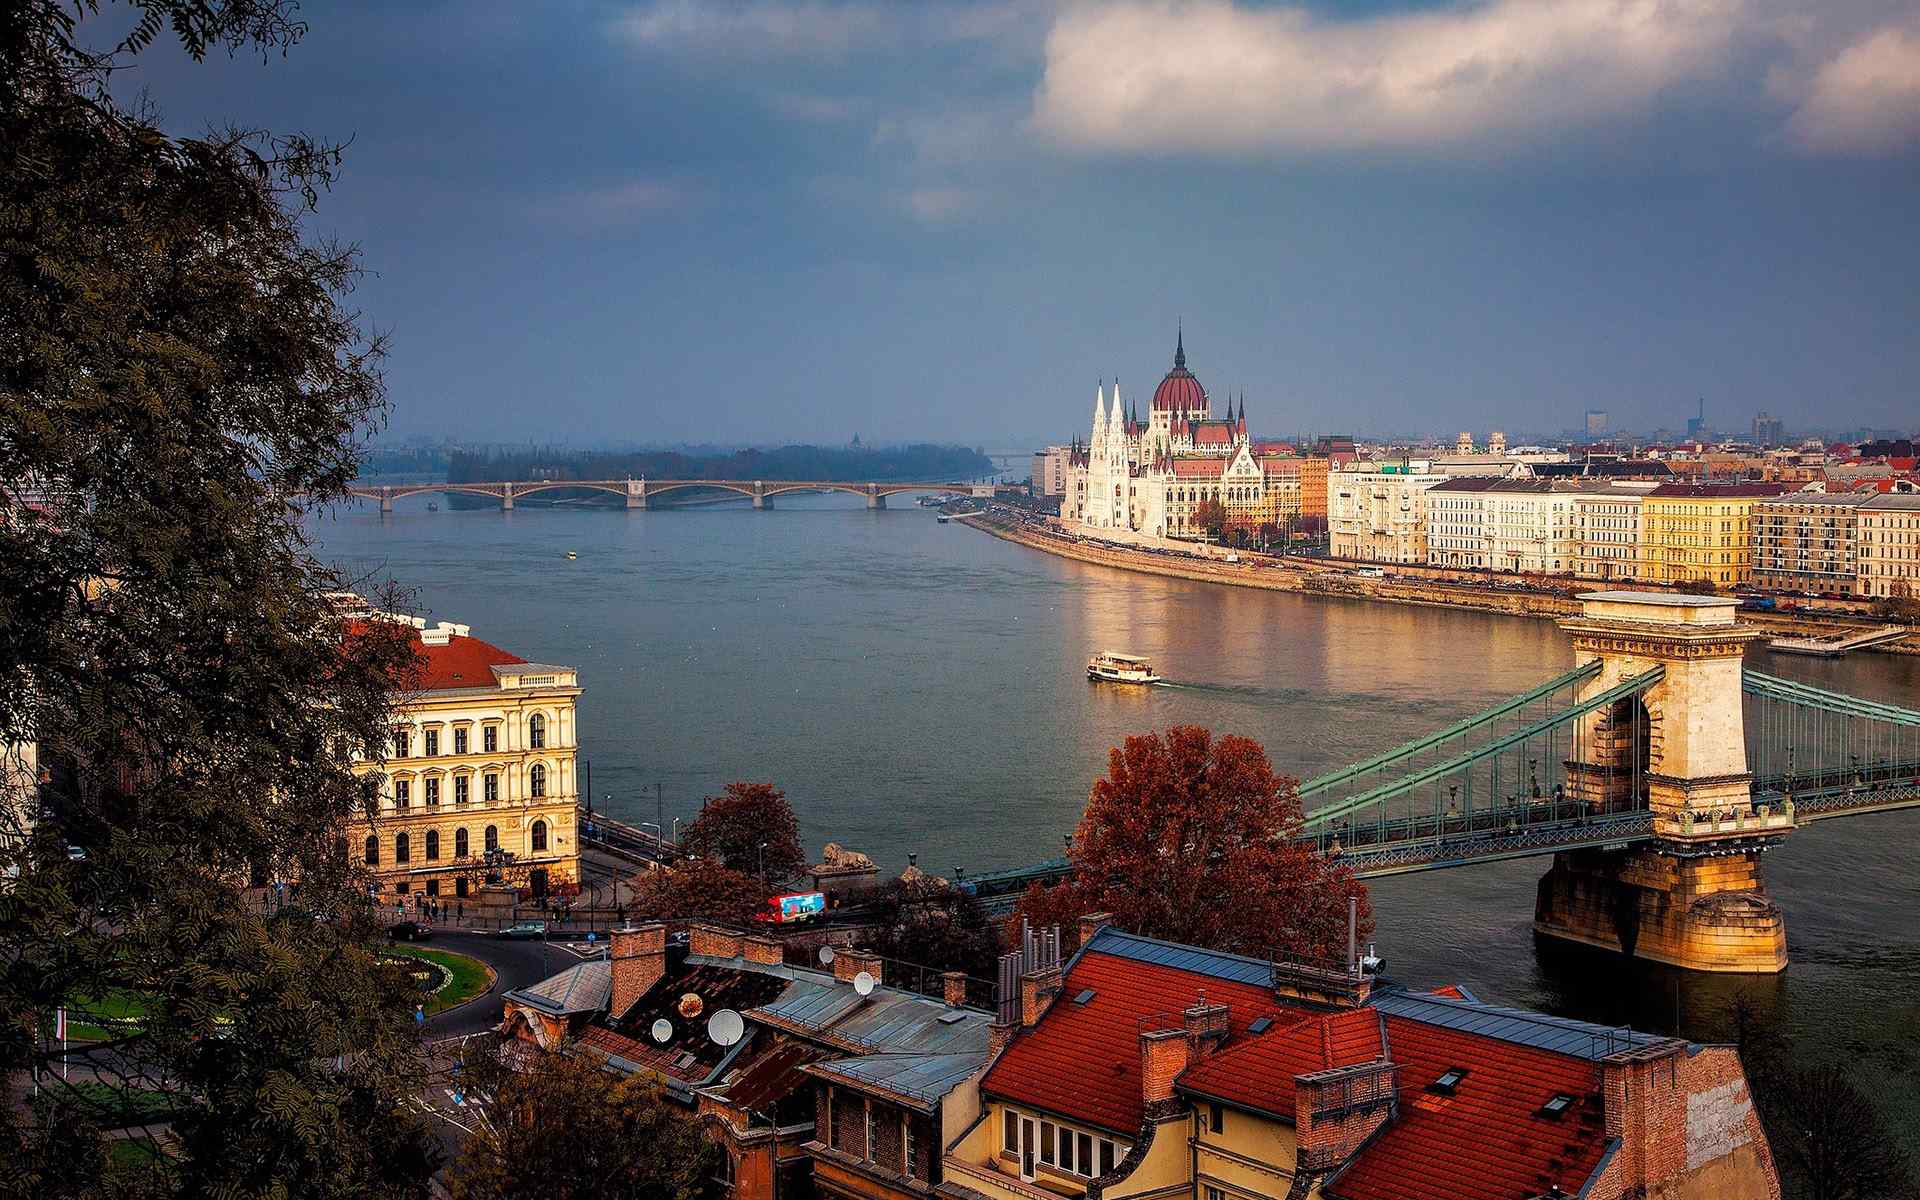 布达佩斯唯美城市风景桌面壁纸